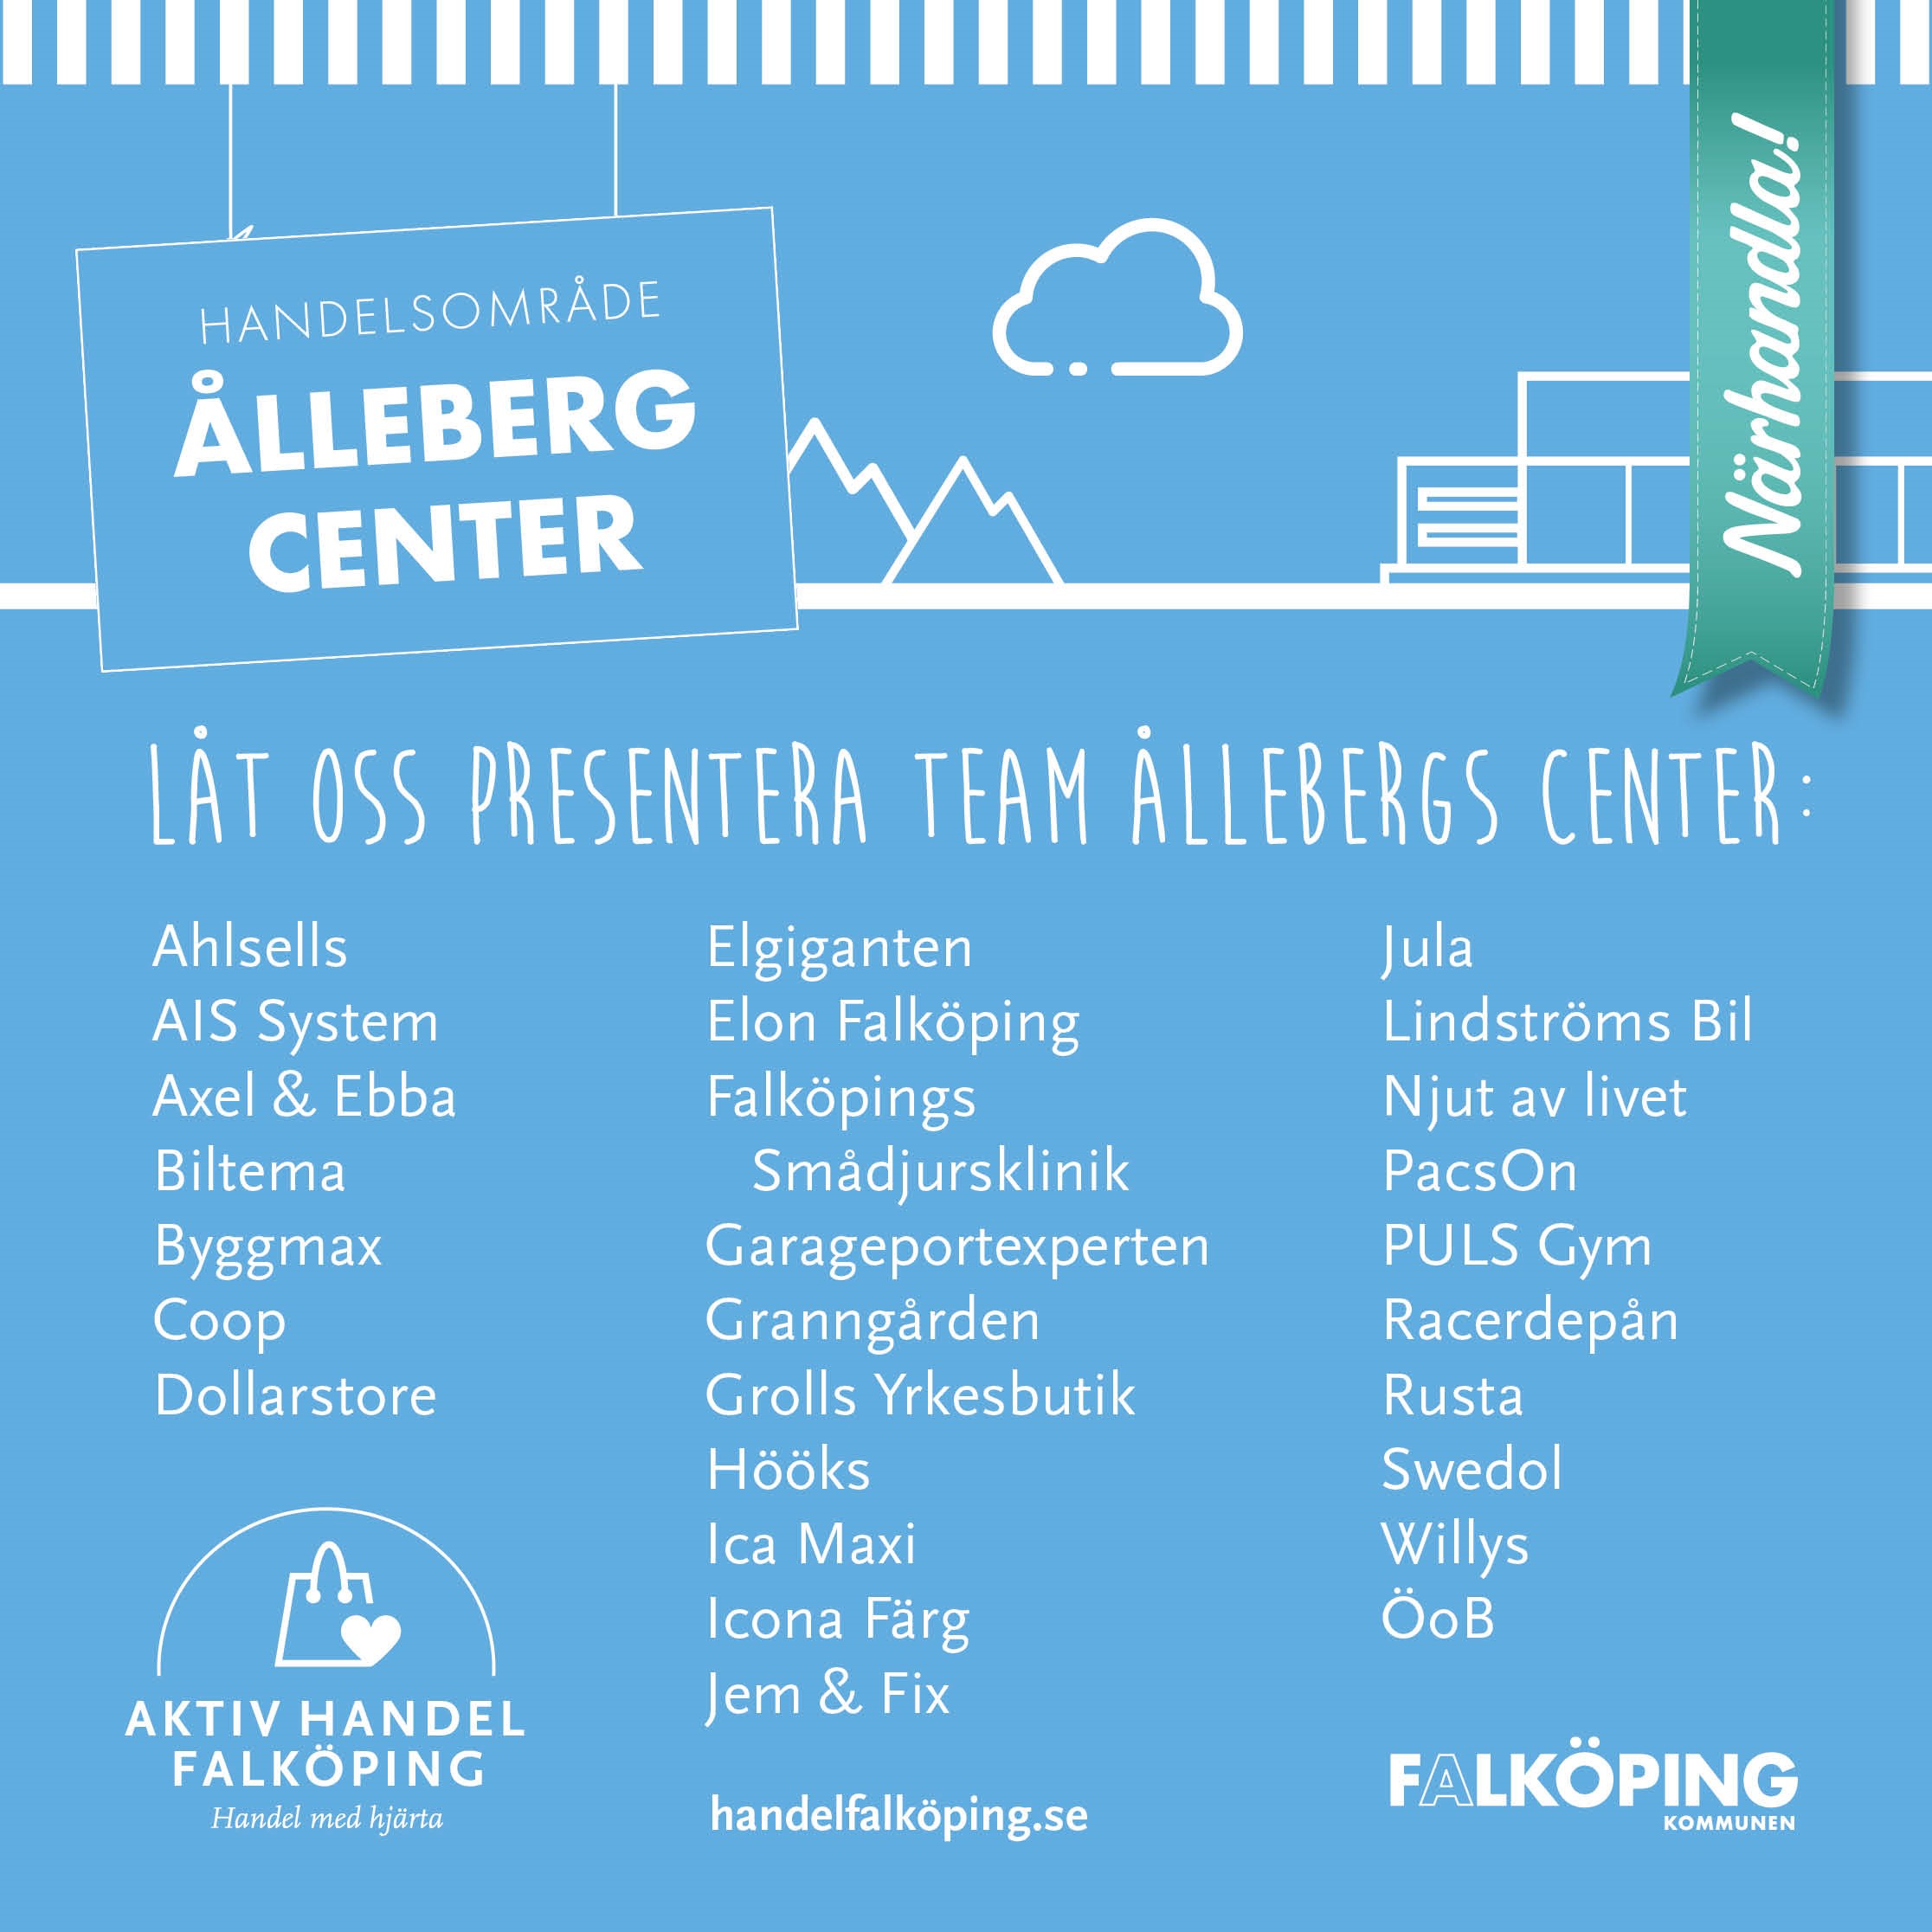 affisch Ålleberg Center med vit text och blå bakgrund.